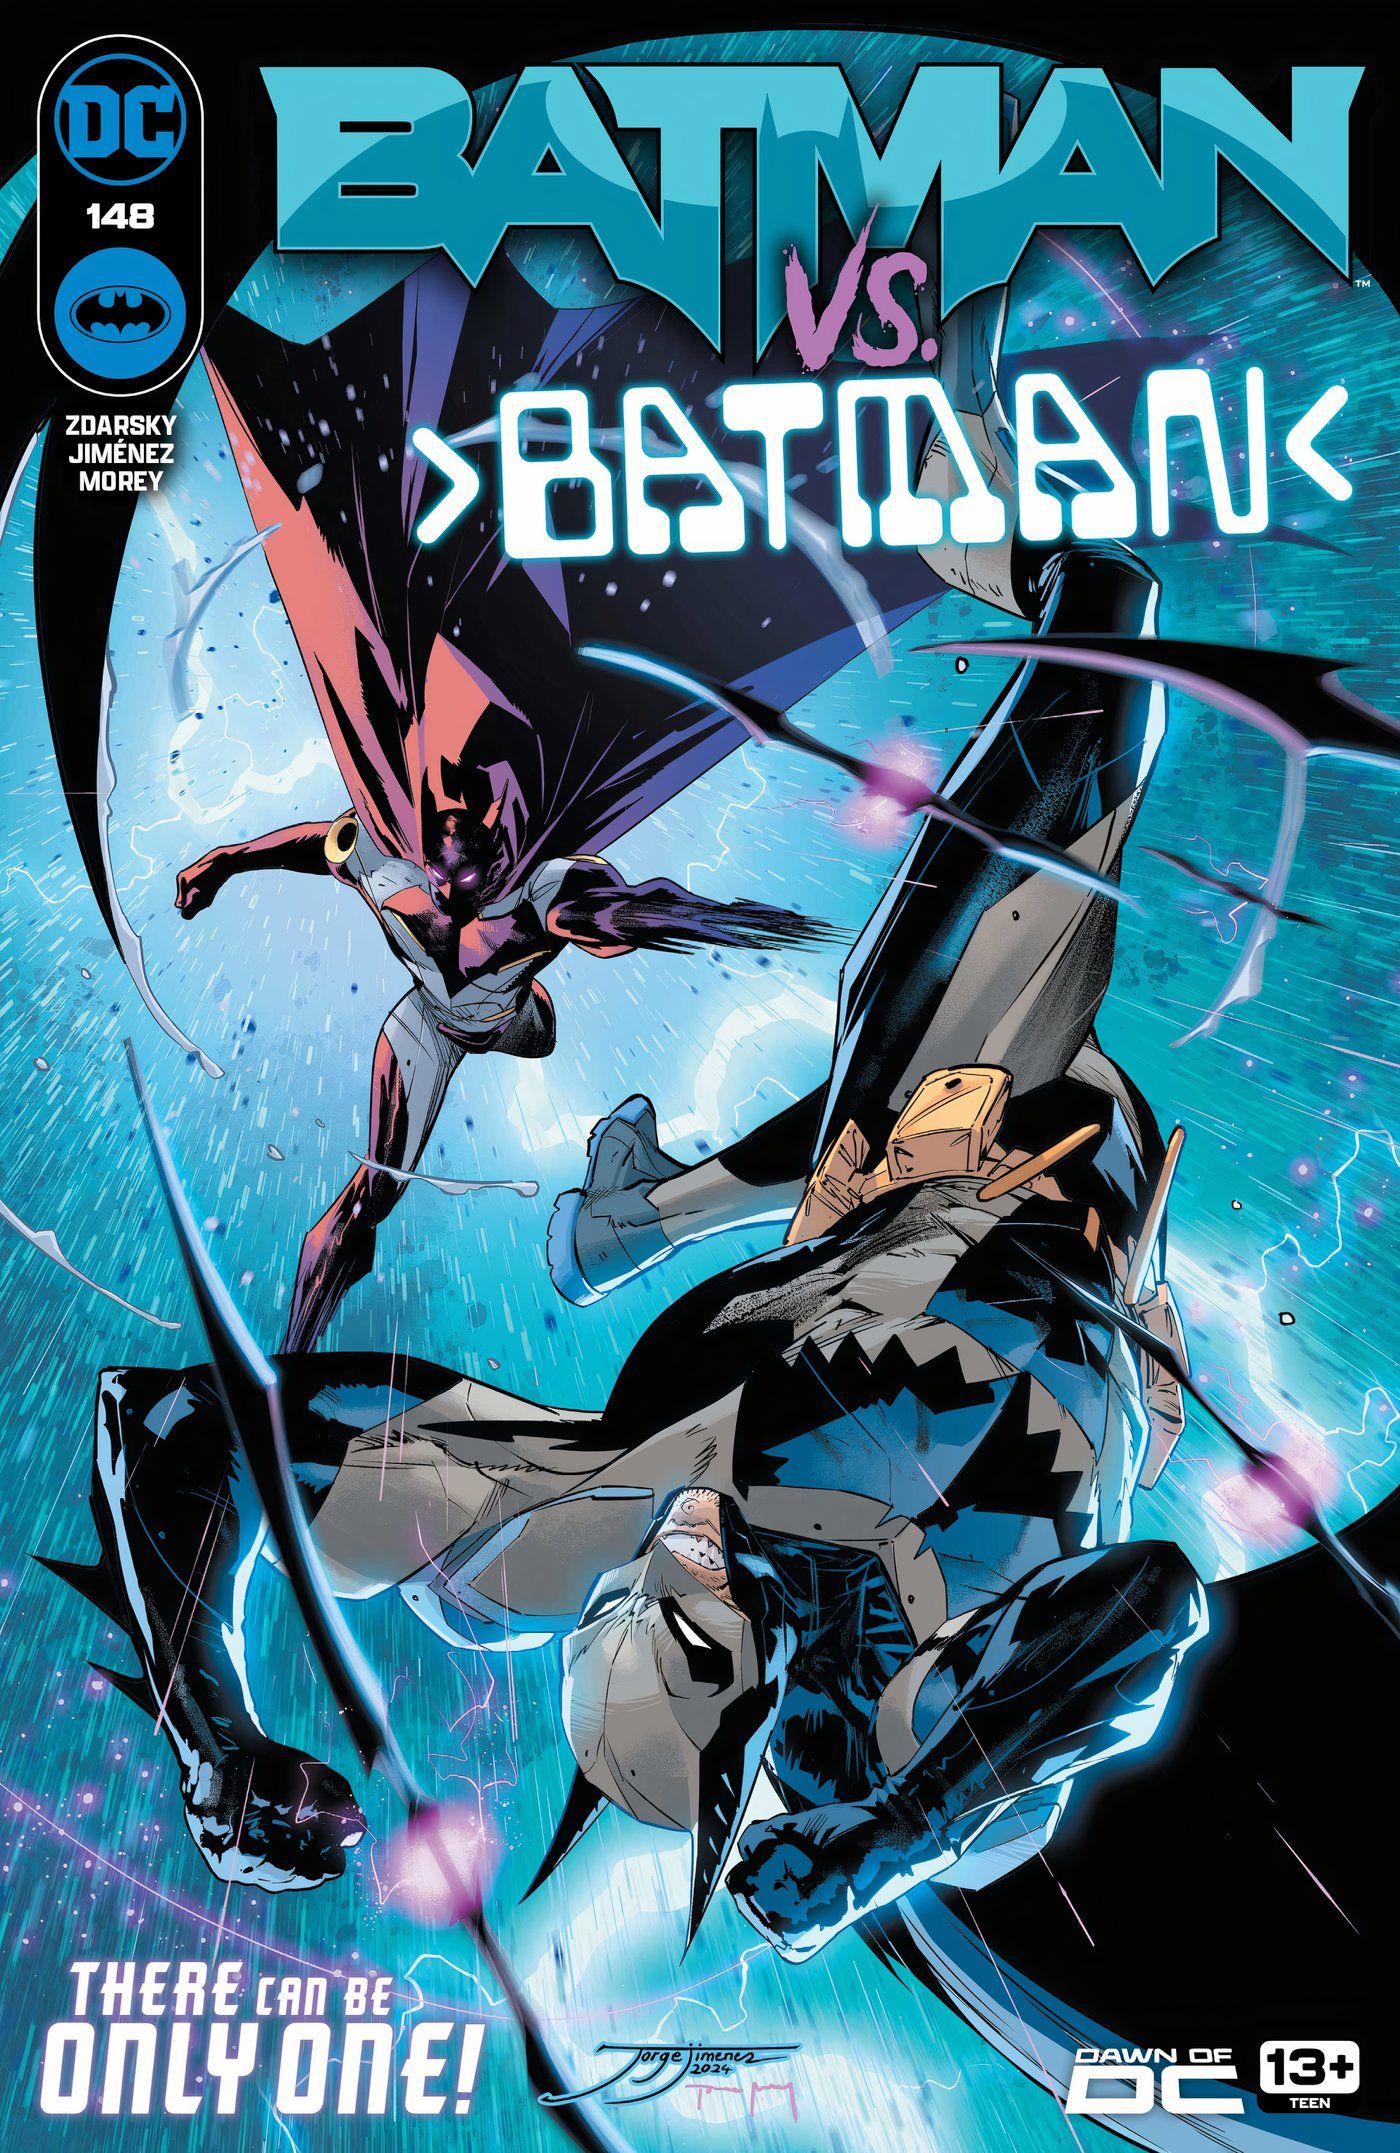 Capa principal do Batman 148: Batman luta contra o robô Failsafe de Zur-En-Arrh em um espaço azul.